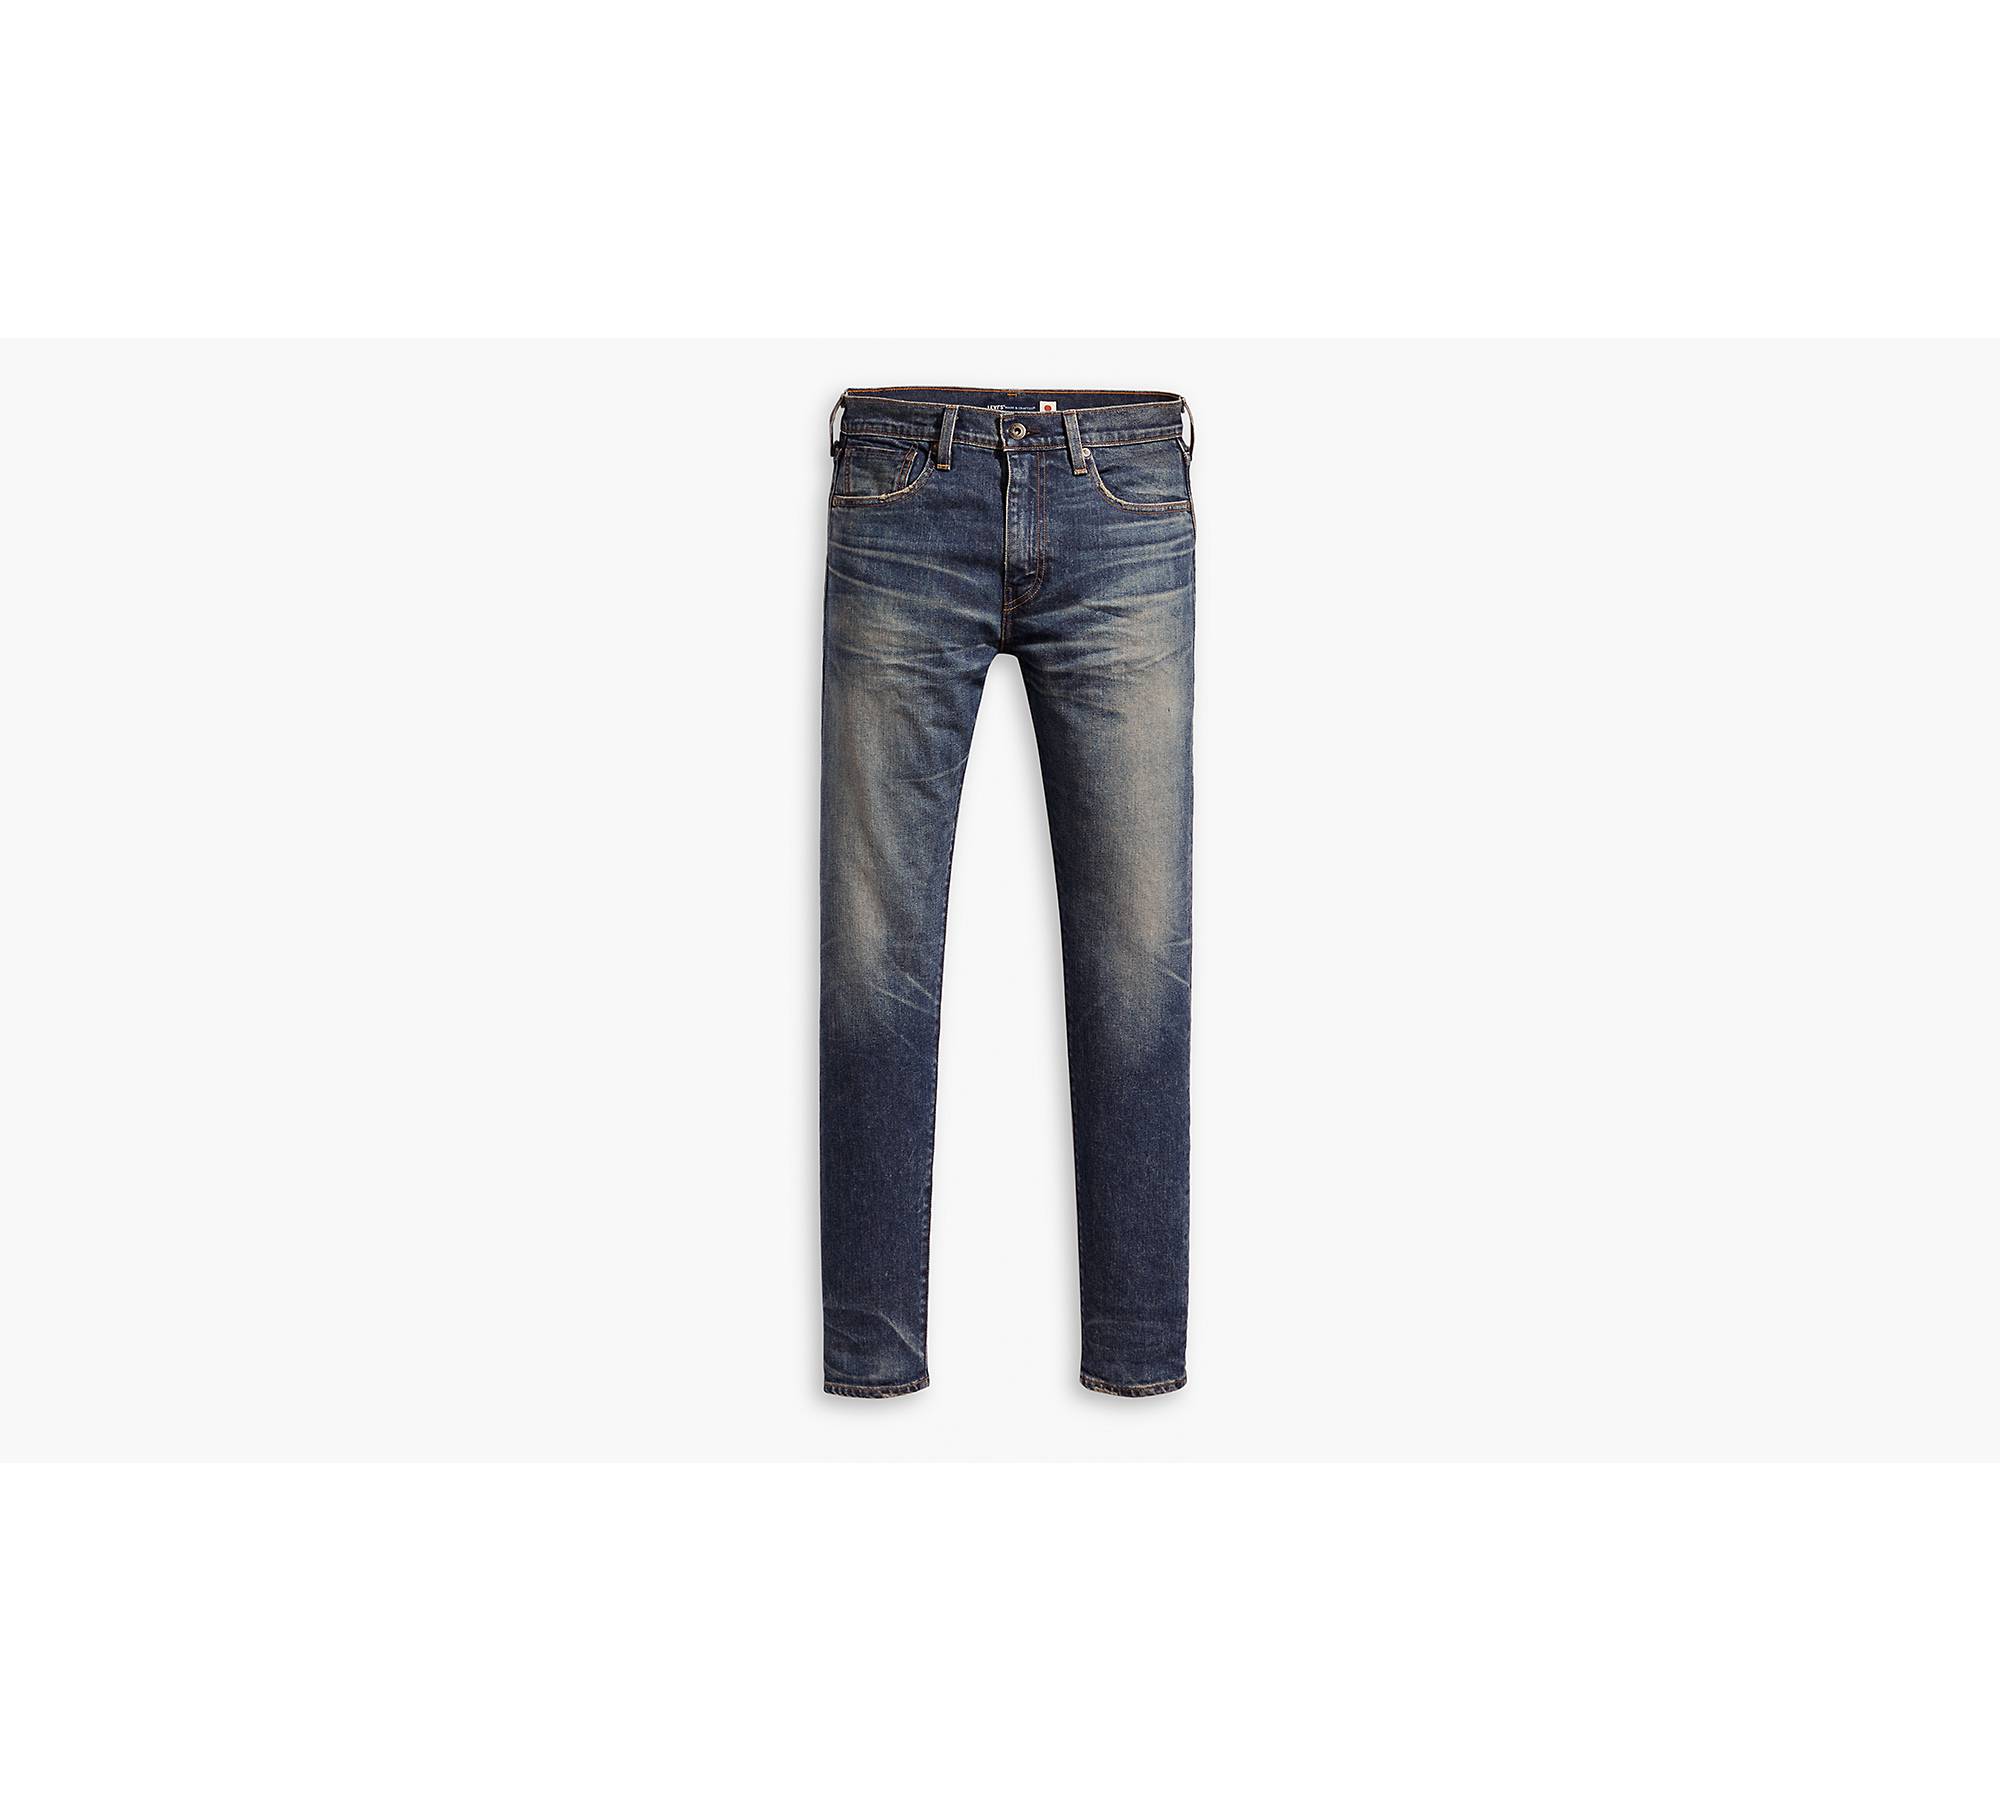 Levi's® Made In Japan 512™ Slim Taper Fit Men's Jeans - Dark Wash ...